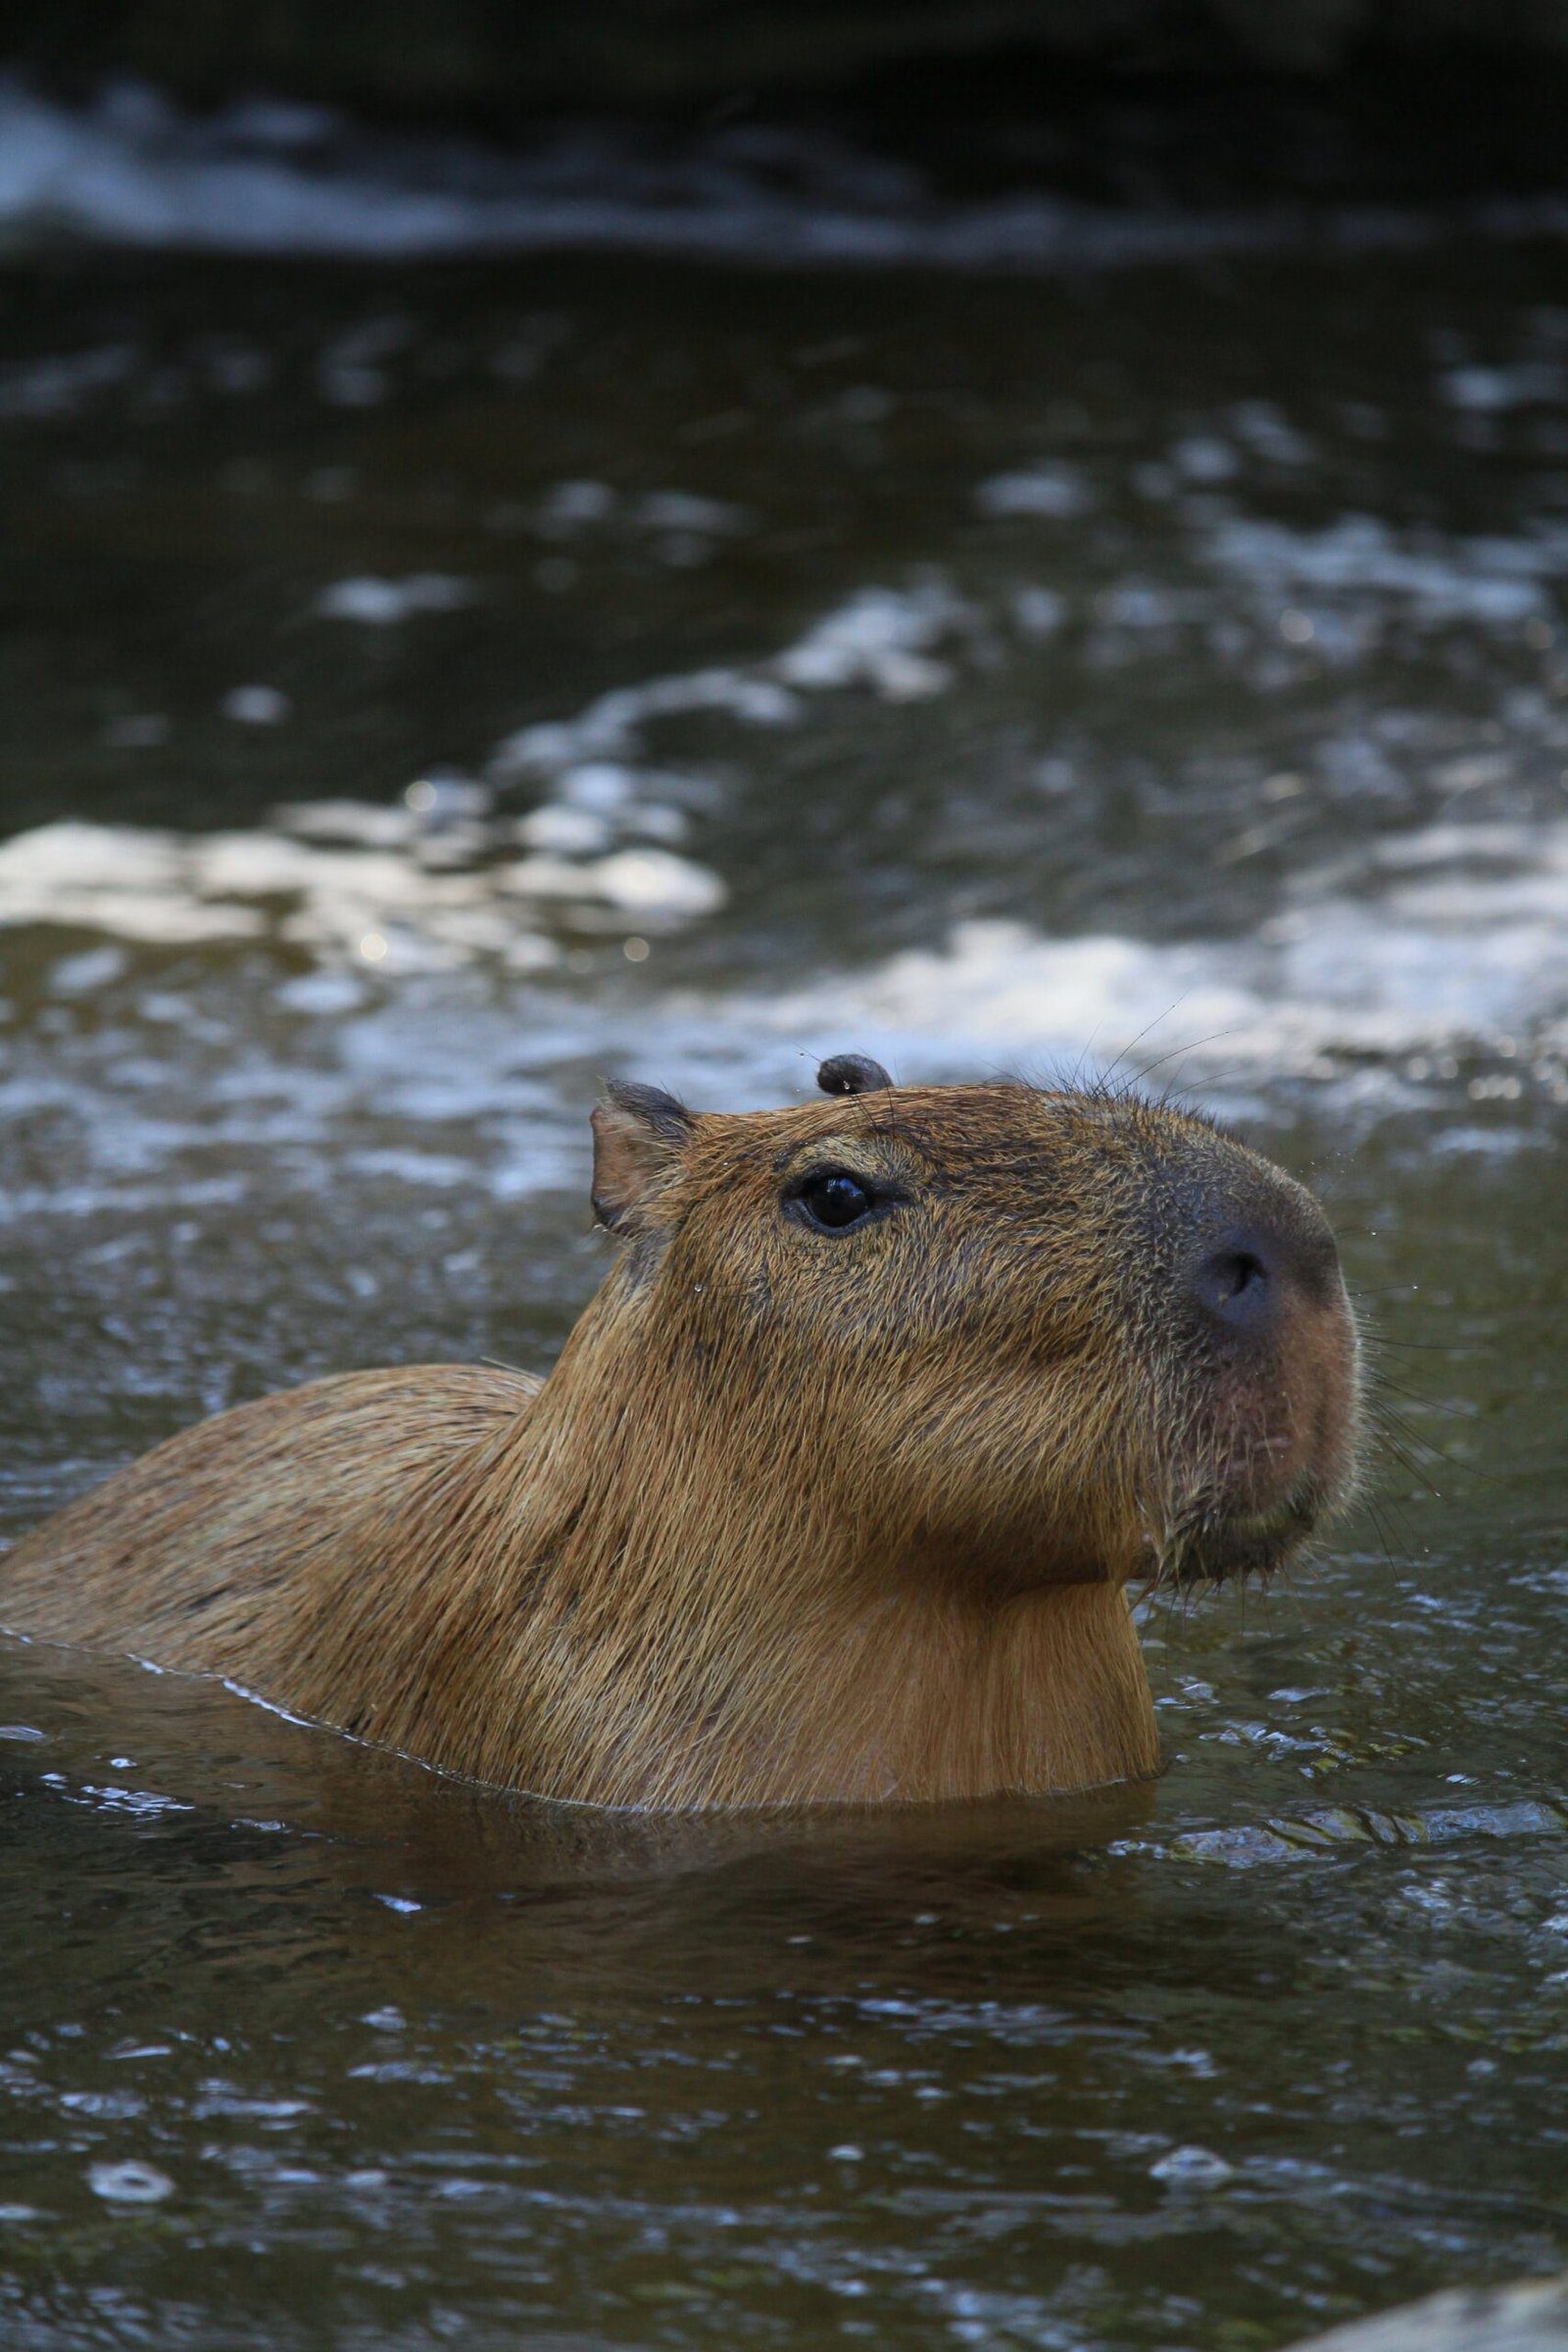 Adorable Picture of a Capybara